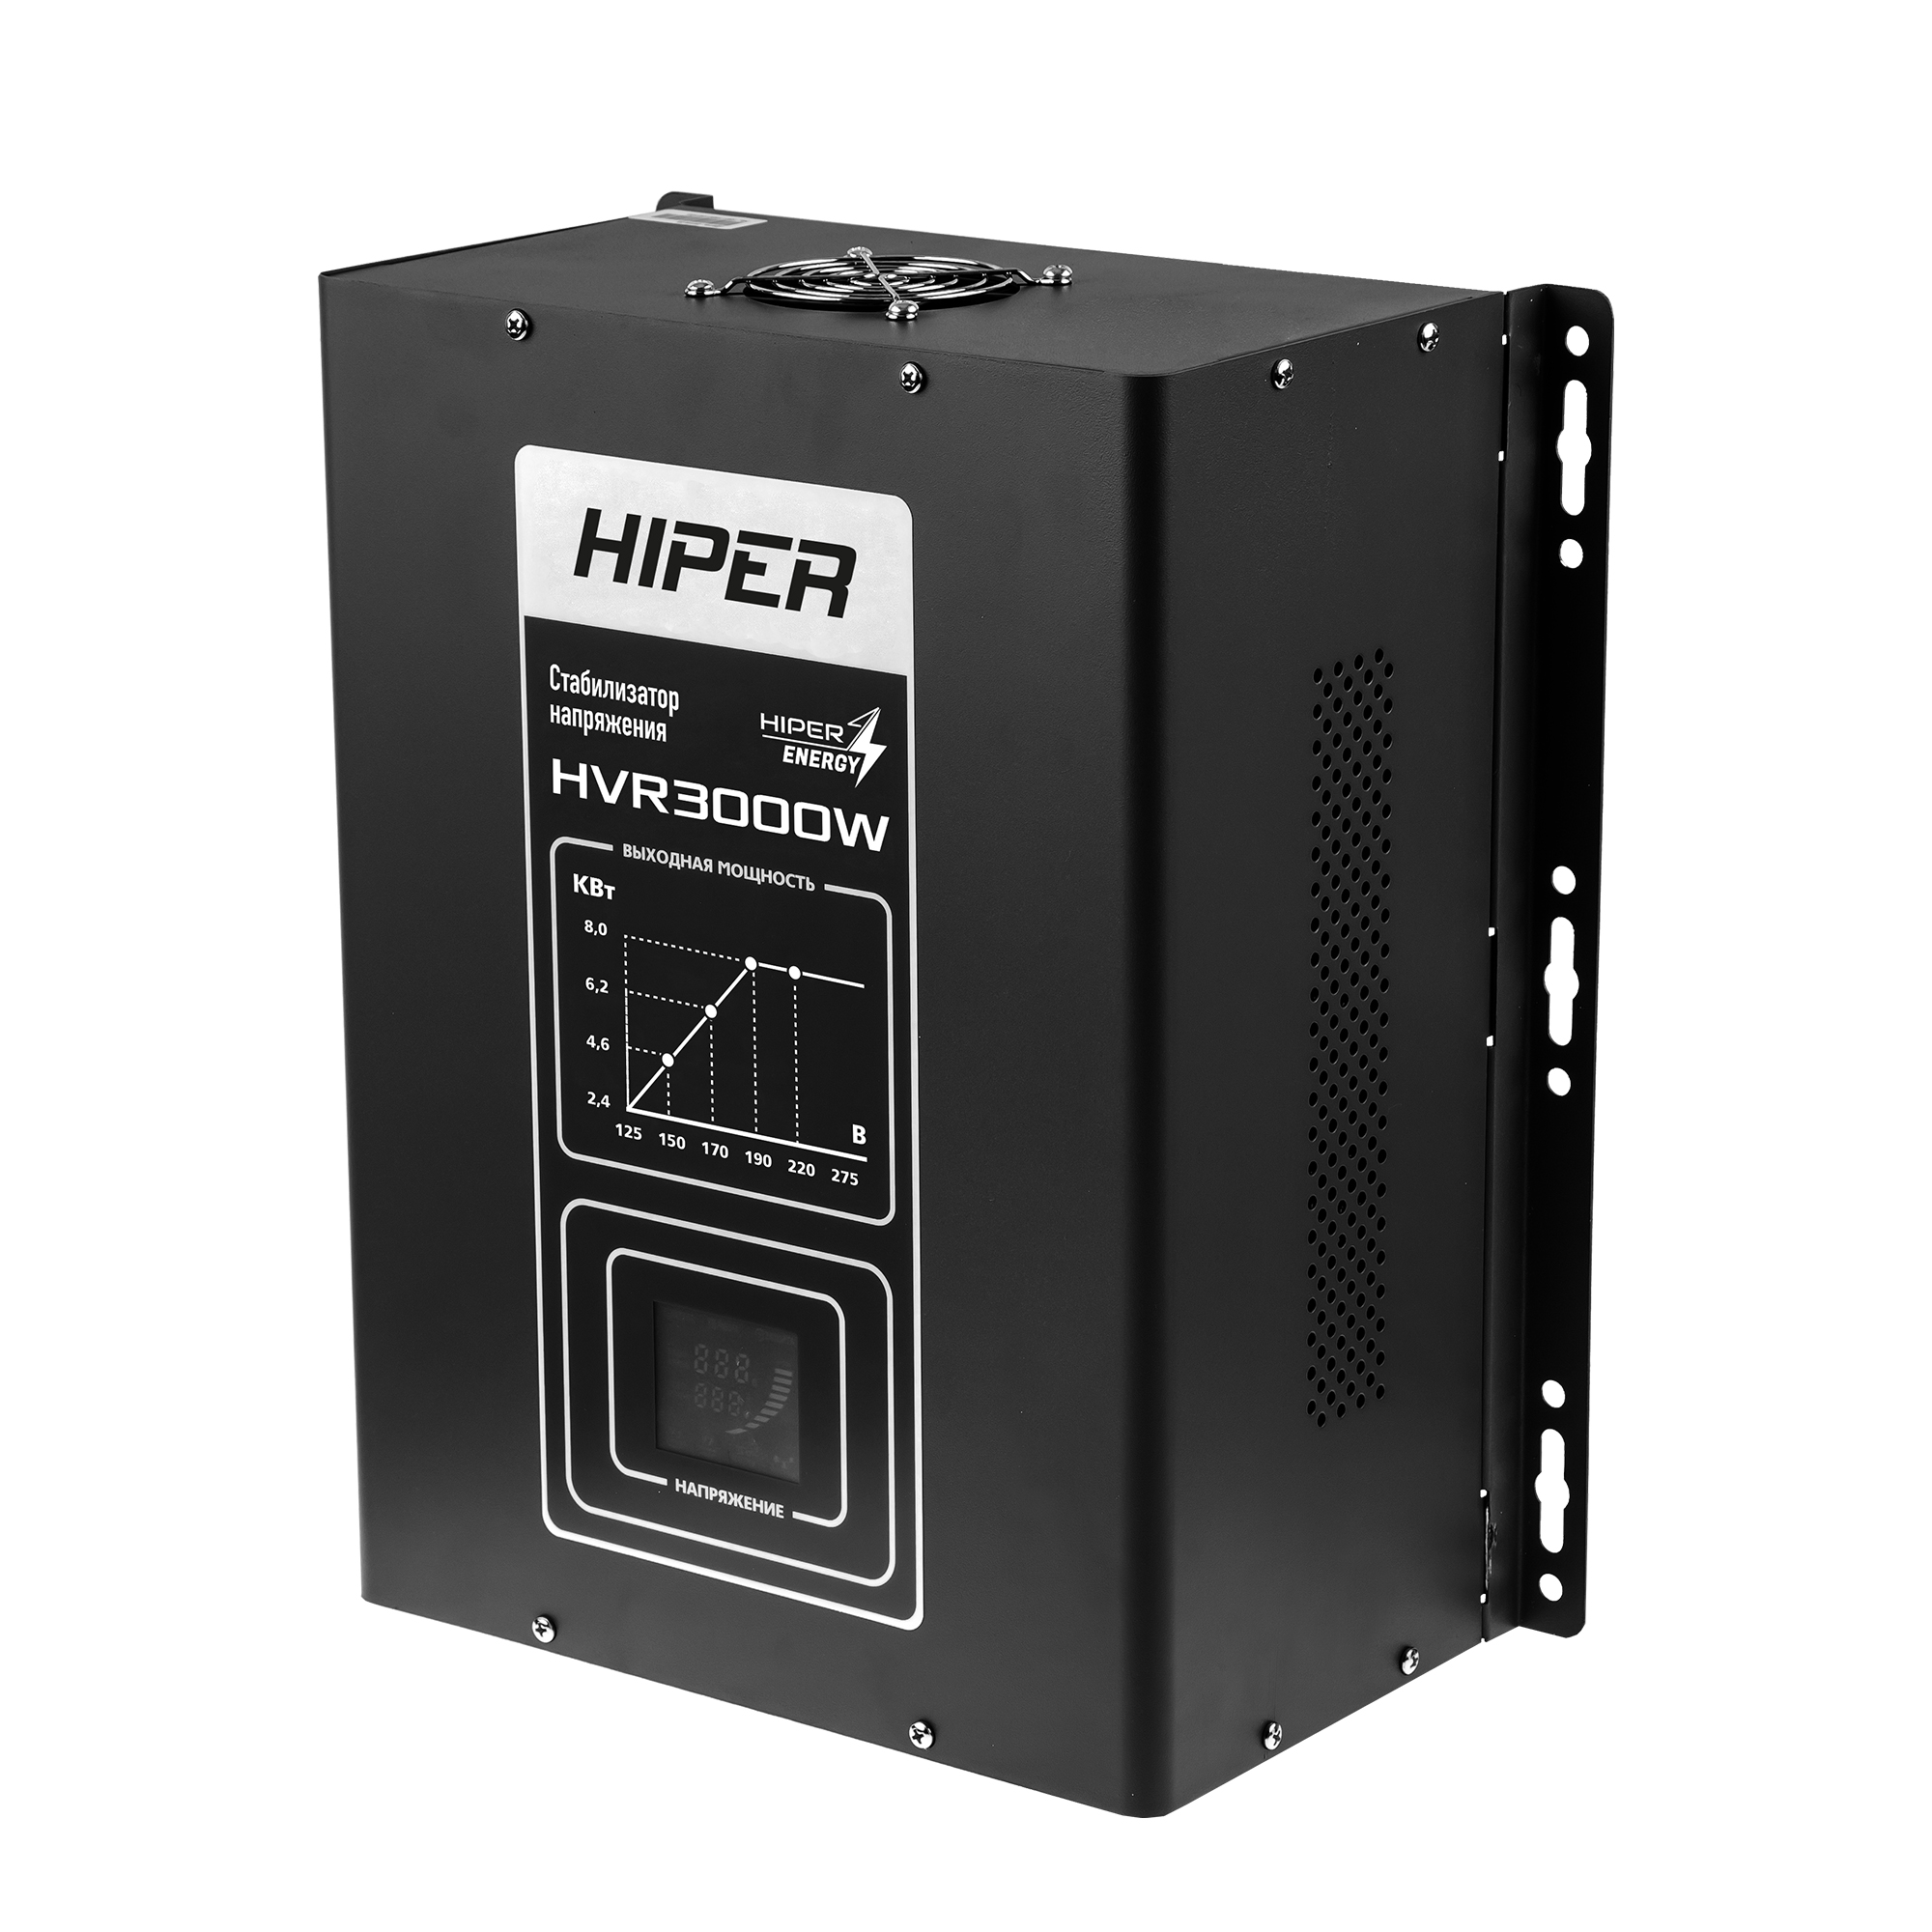 Стабилизатор напряжения Hiper HVR3000W, 3000VA, 2.4кВт, клеммная колодка, черный